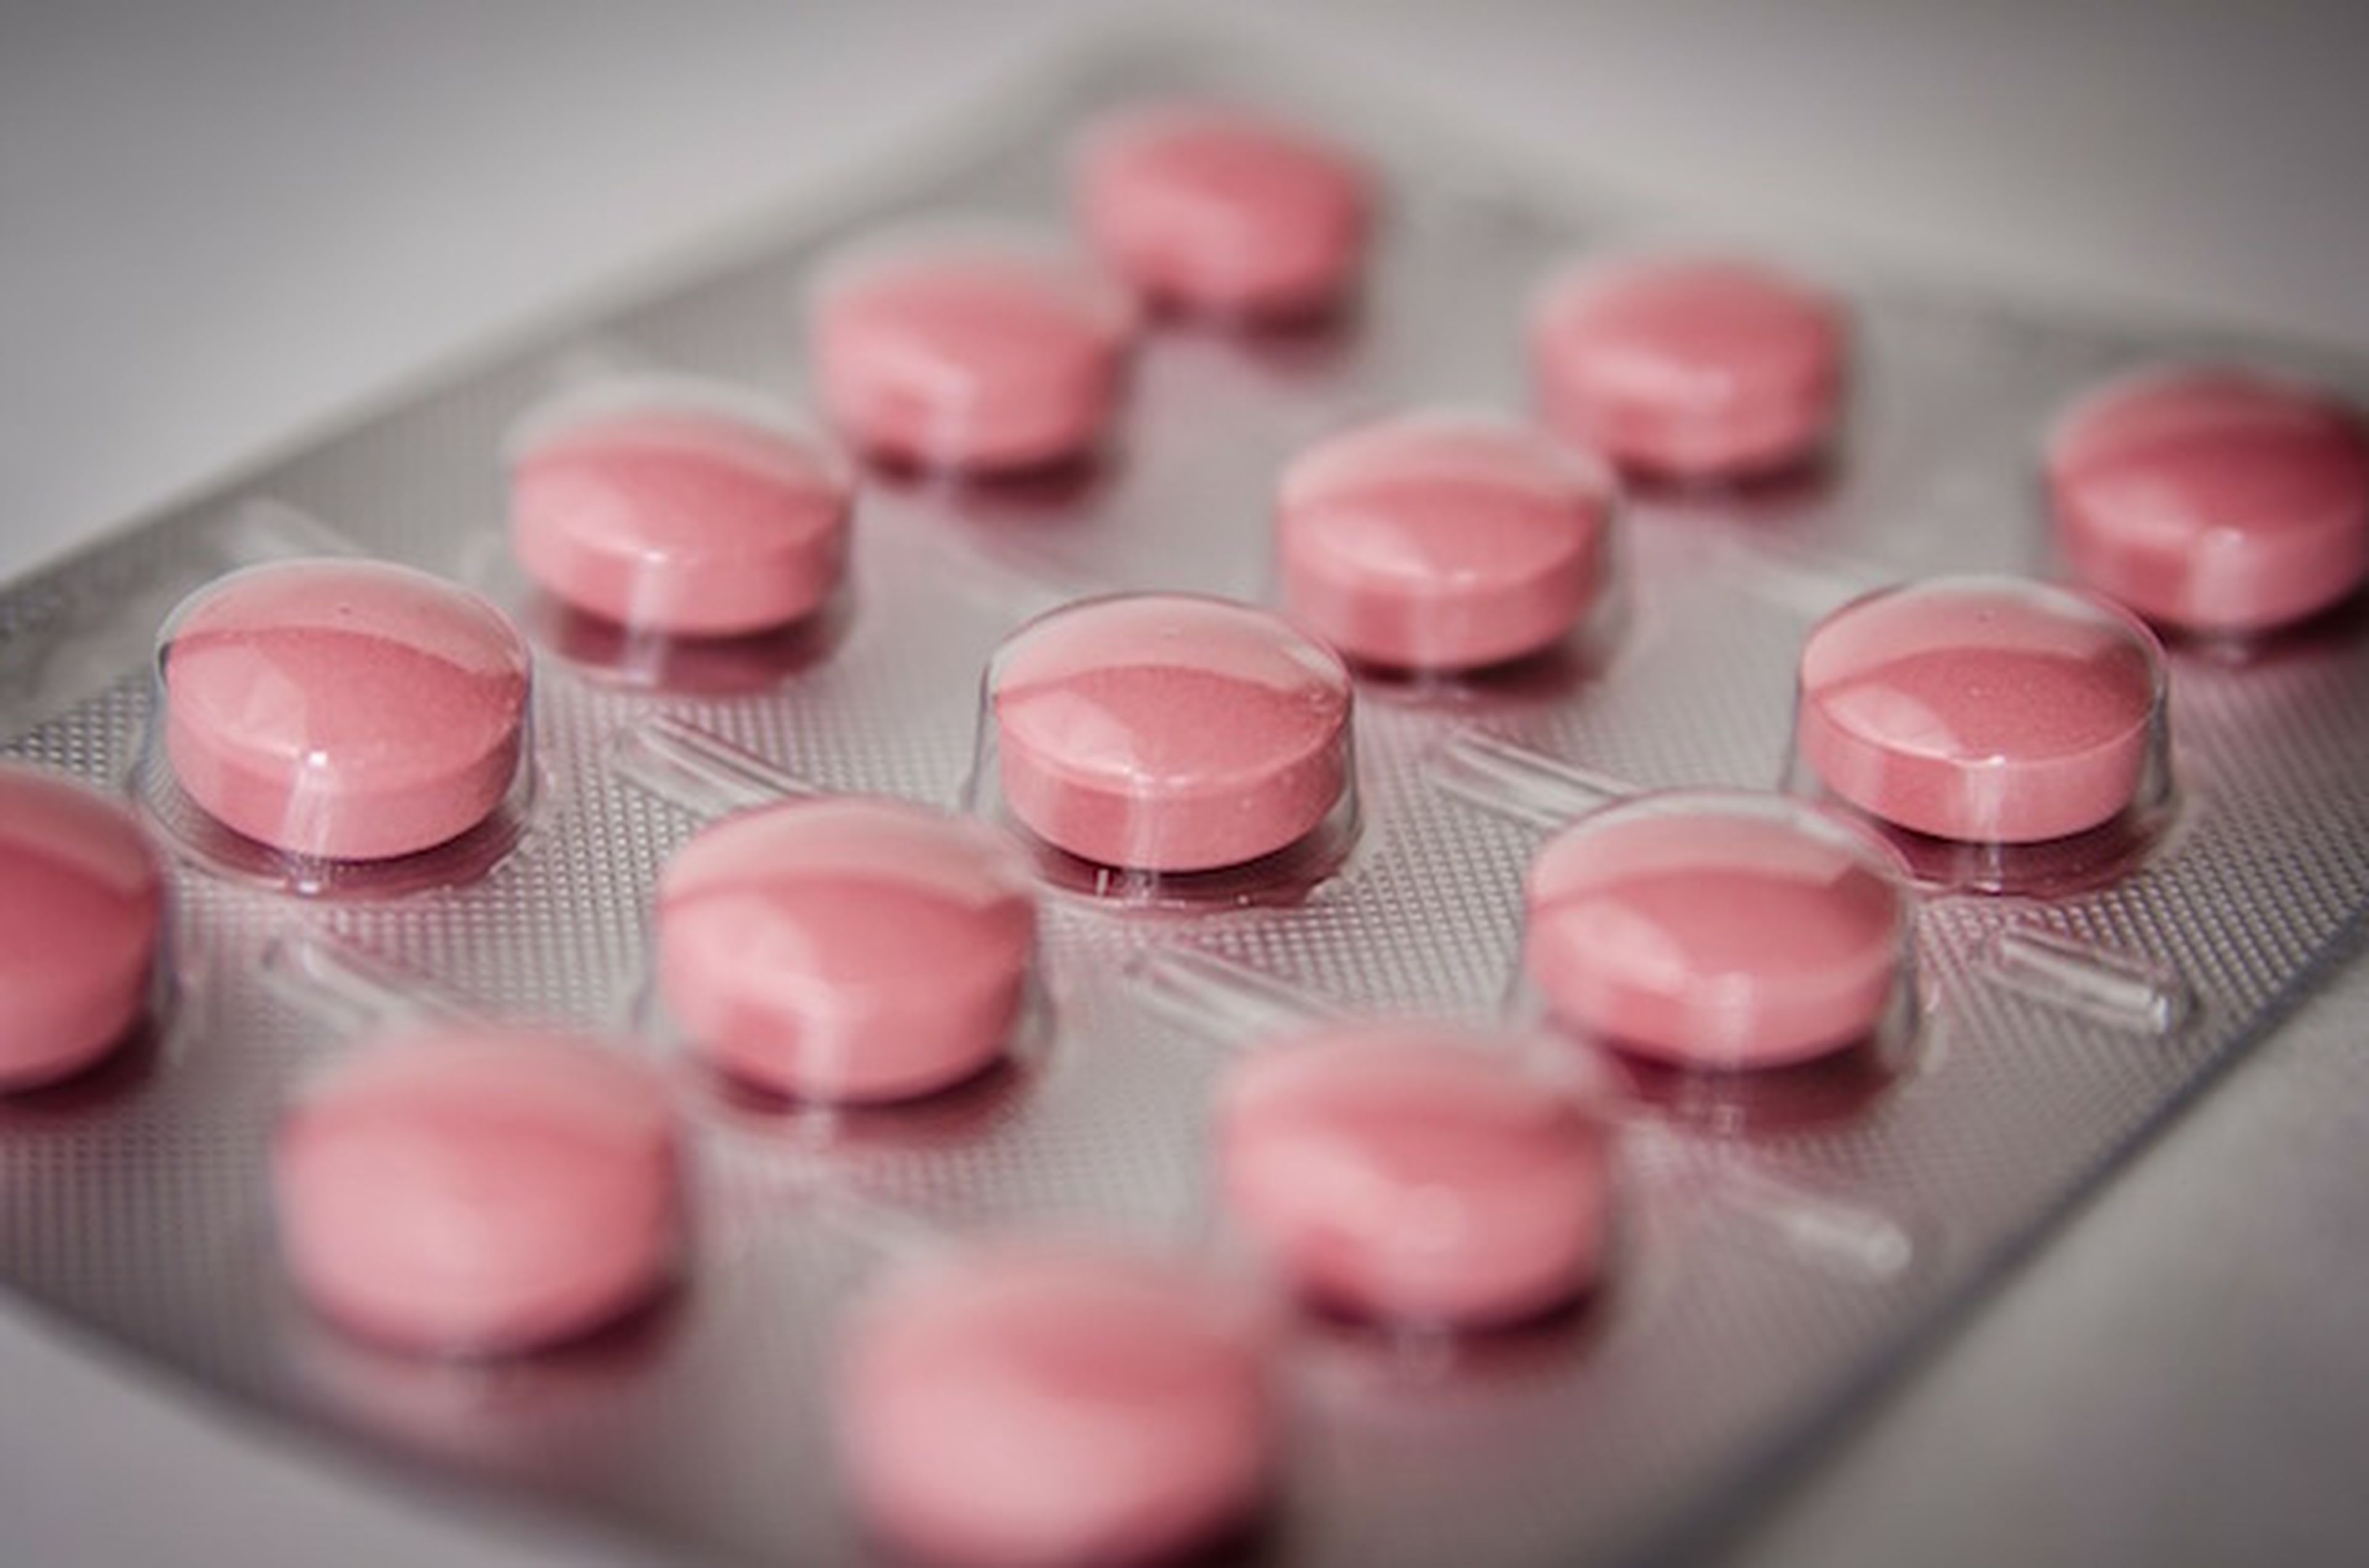 El Ibuprofeno aumenta el riesgo de infarto aun en dosis pequeña